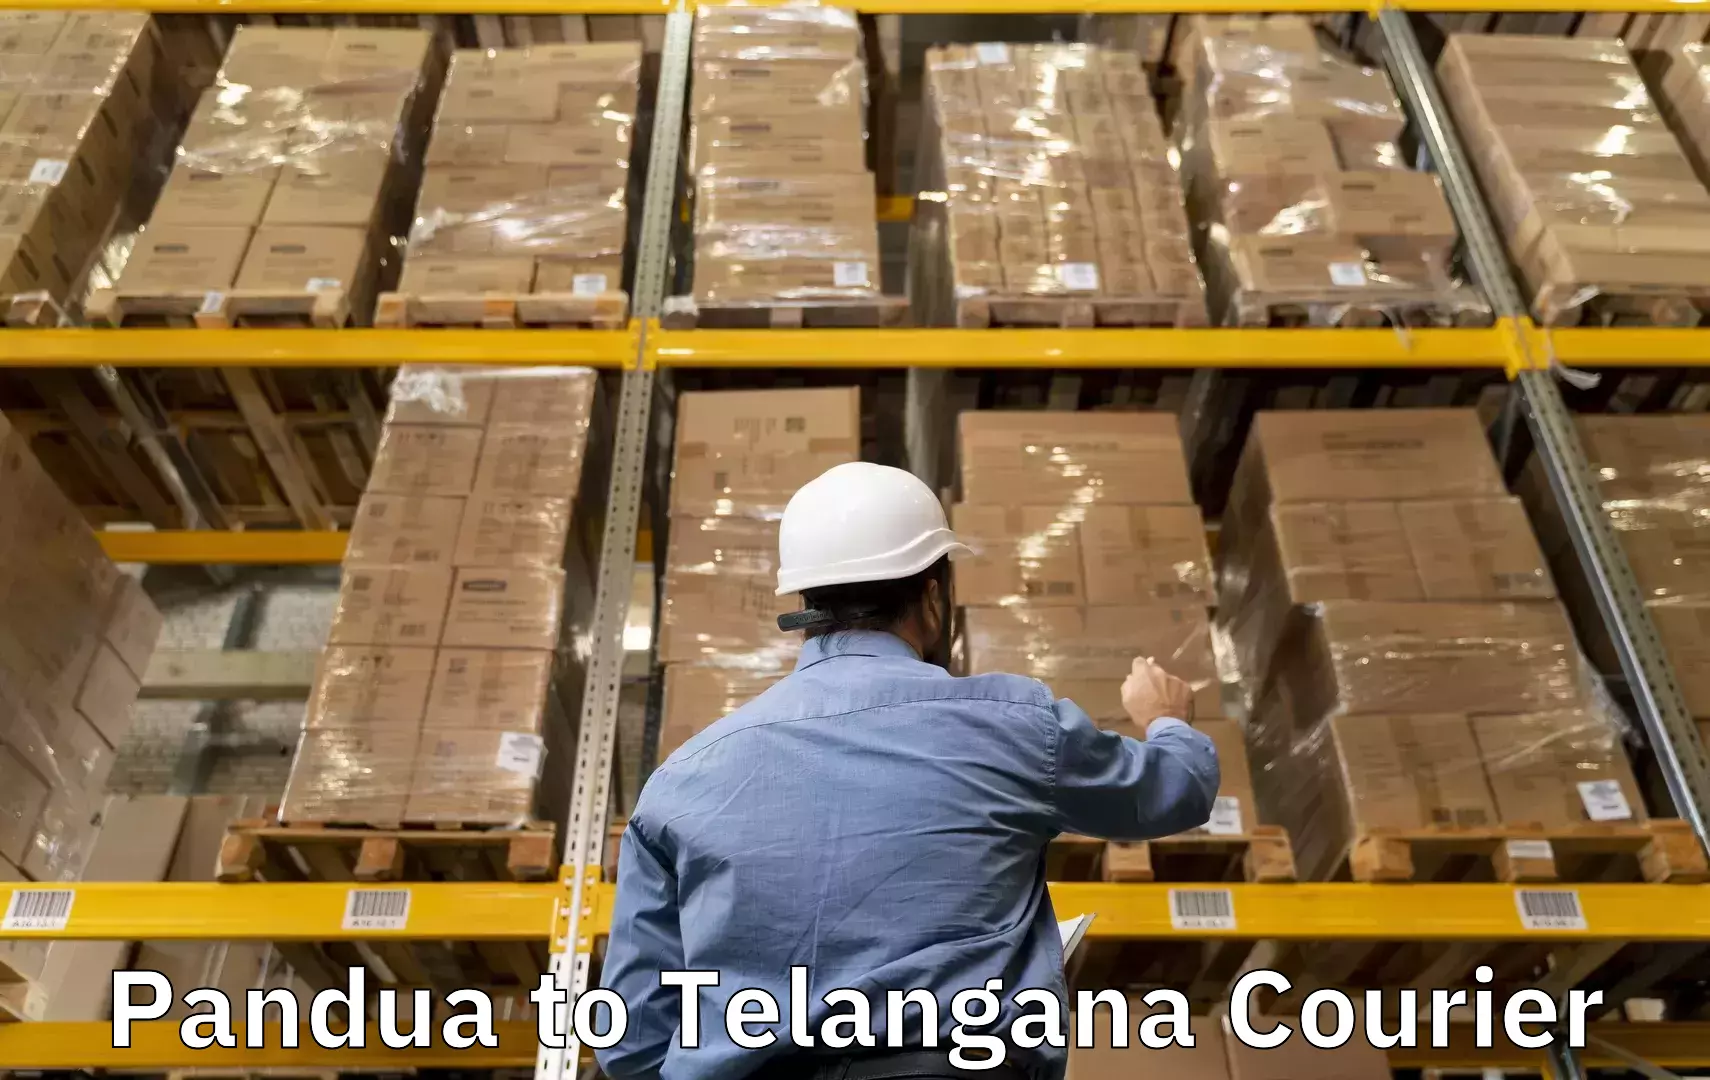 Bulk luggage shipping in Pandua to Yellandu